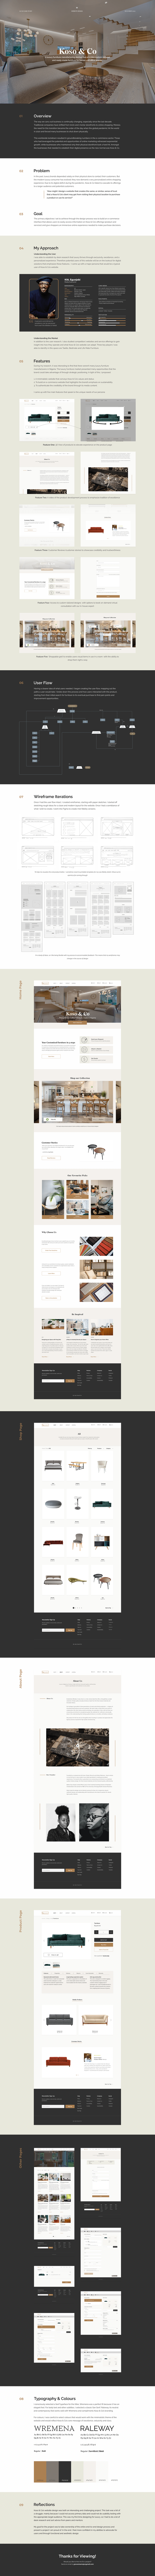 Furniture Website Grace Oisamoje interface design luxury website product design  UI ux UX Case Study Website Design